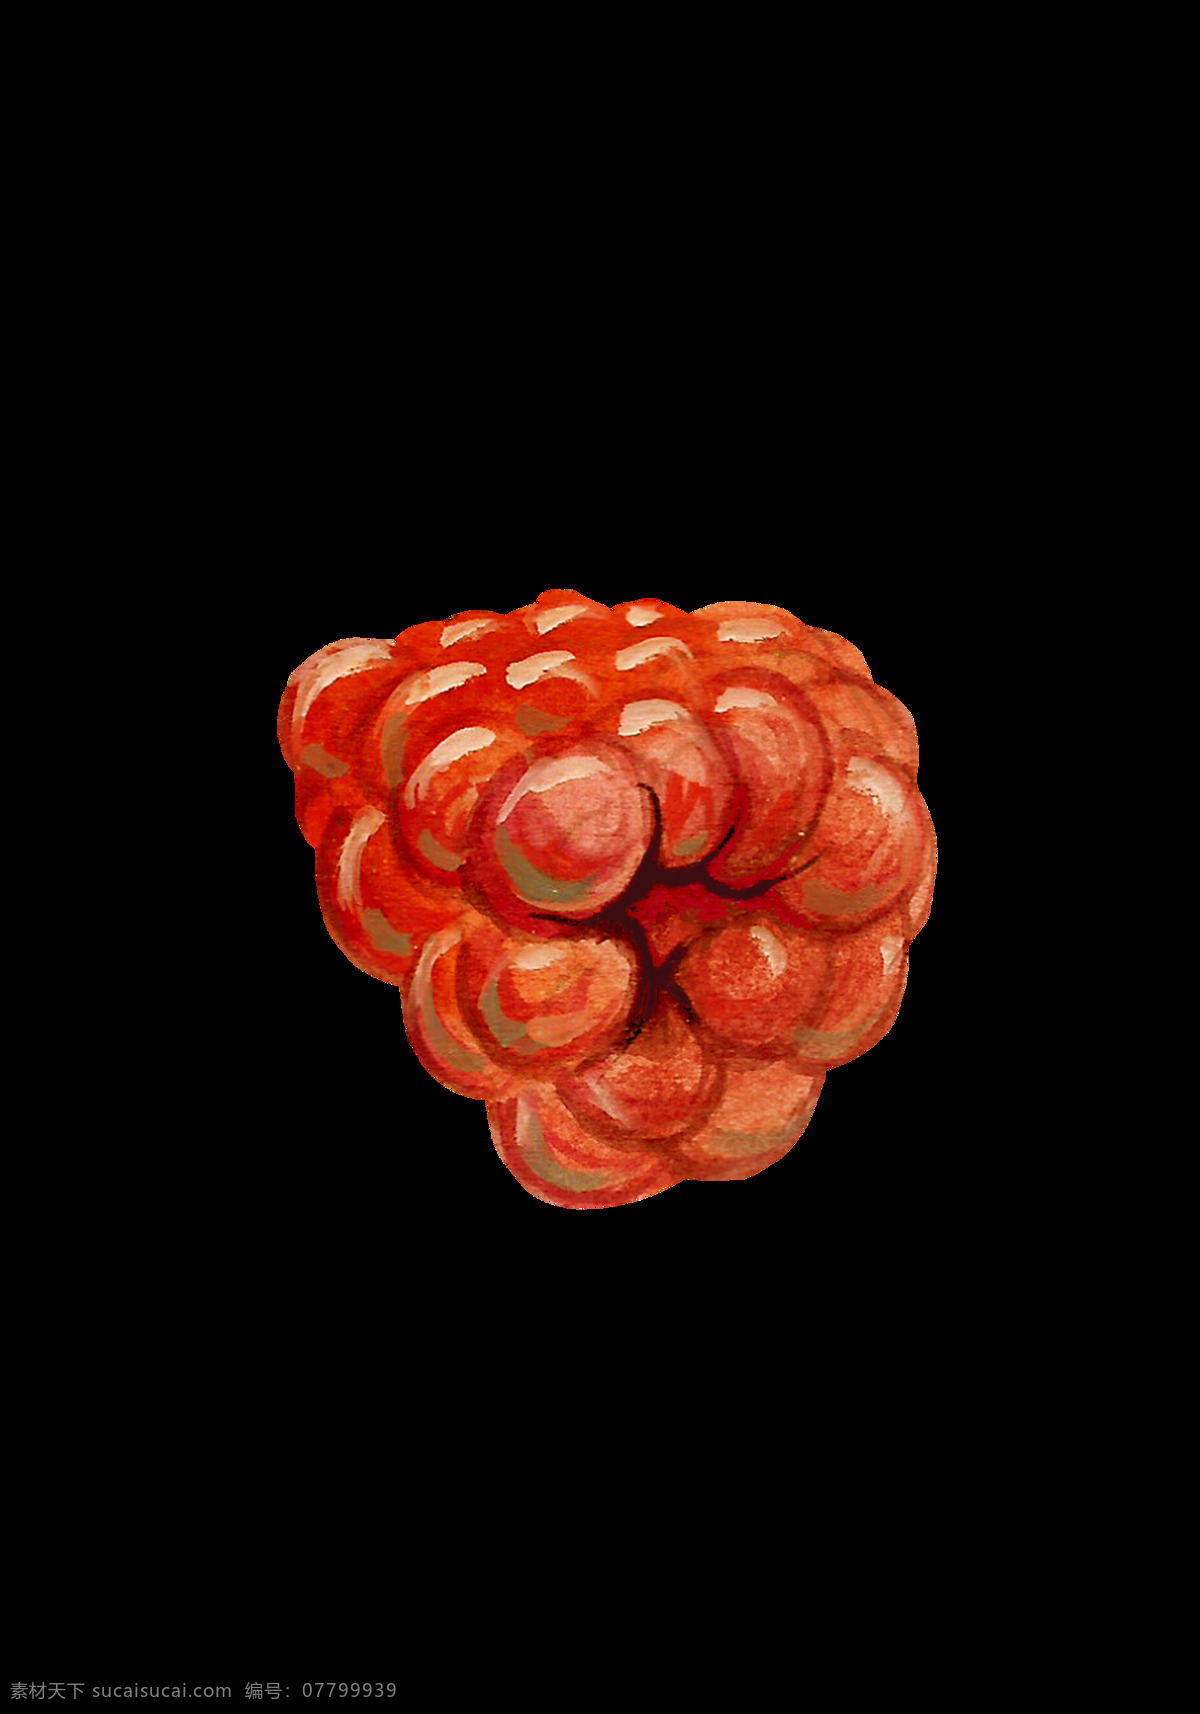 立体 树莓 透明 水果 卡通 抠图专用 装饰 设计素材